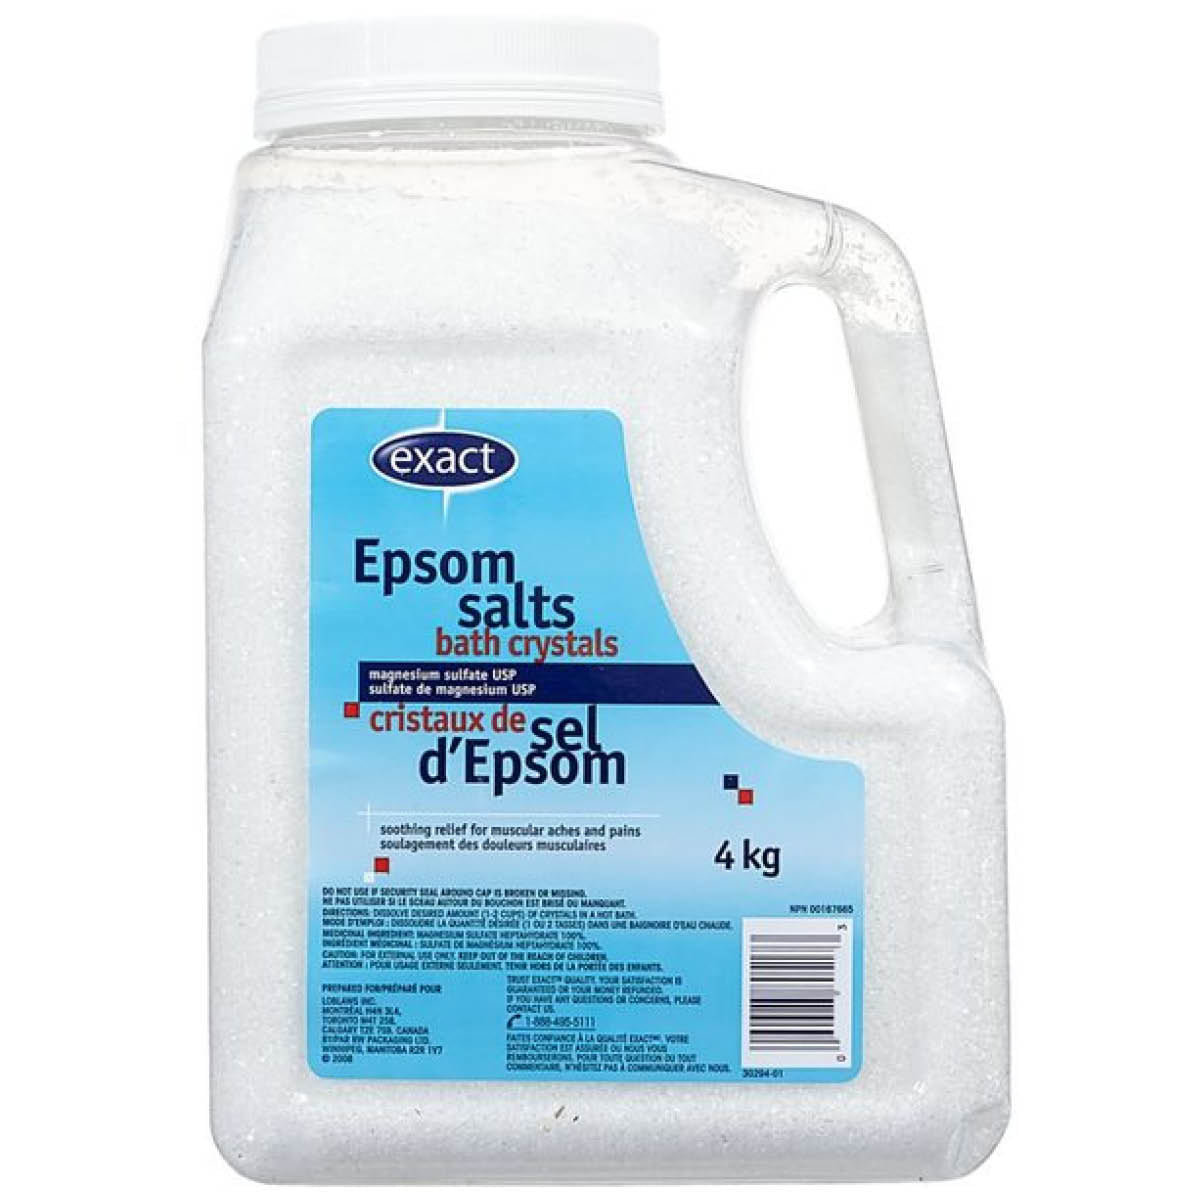 Exact Epsom salt 4 kg